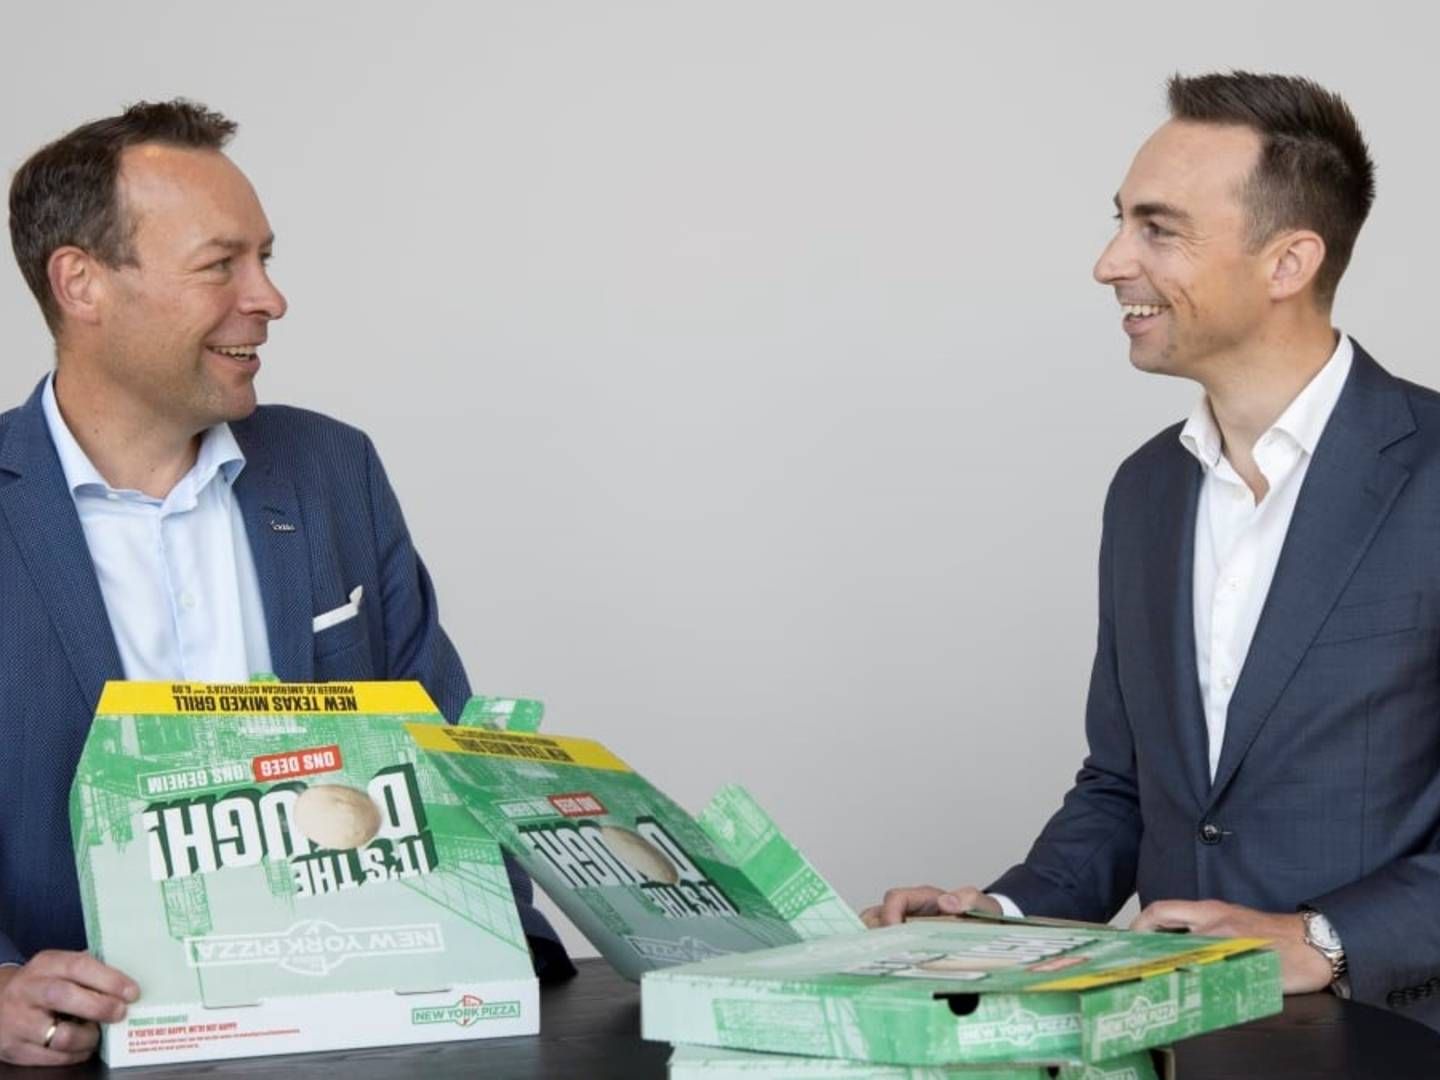 Orklas koncernchef Jaan Ivar Semlitsch (th.) har underskrevet endnu et par tyske pizzaopkøb. | Foto: PR / Orkla / Trygve Indrelid, NTB